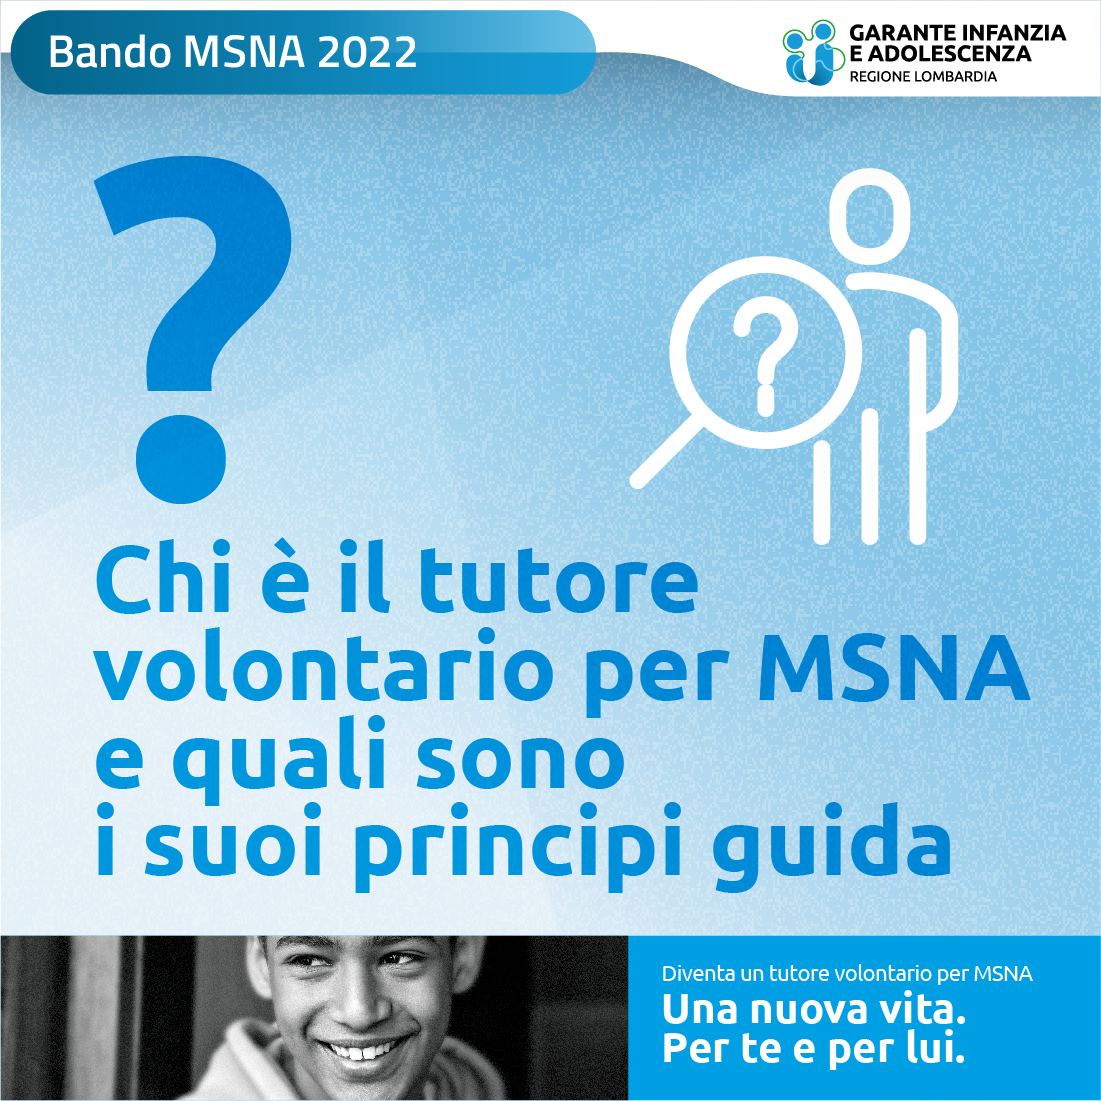 Immagine grafica della campagna informativa contenente il testo "Chi è il tutore volontario per MSNA e quali sono i suoi principi guida?"